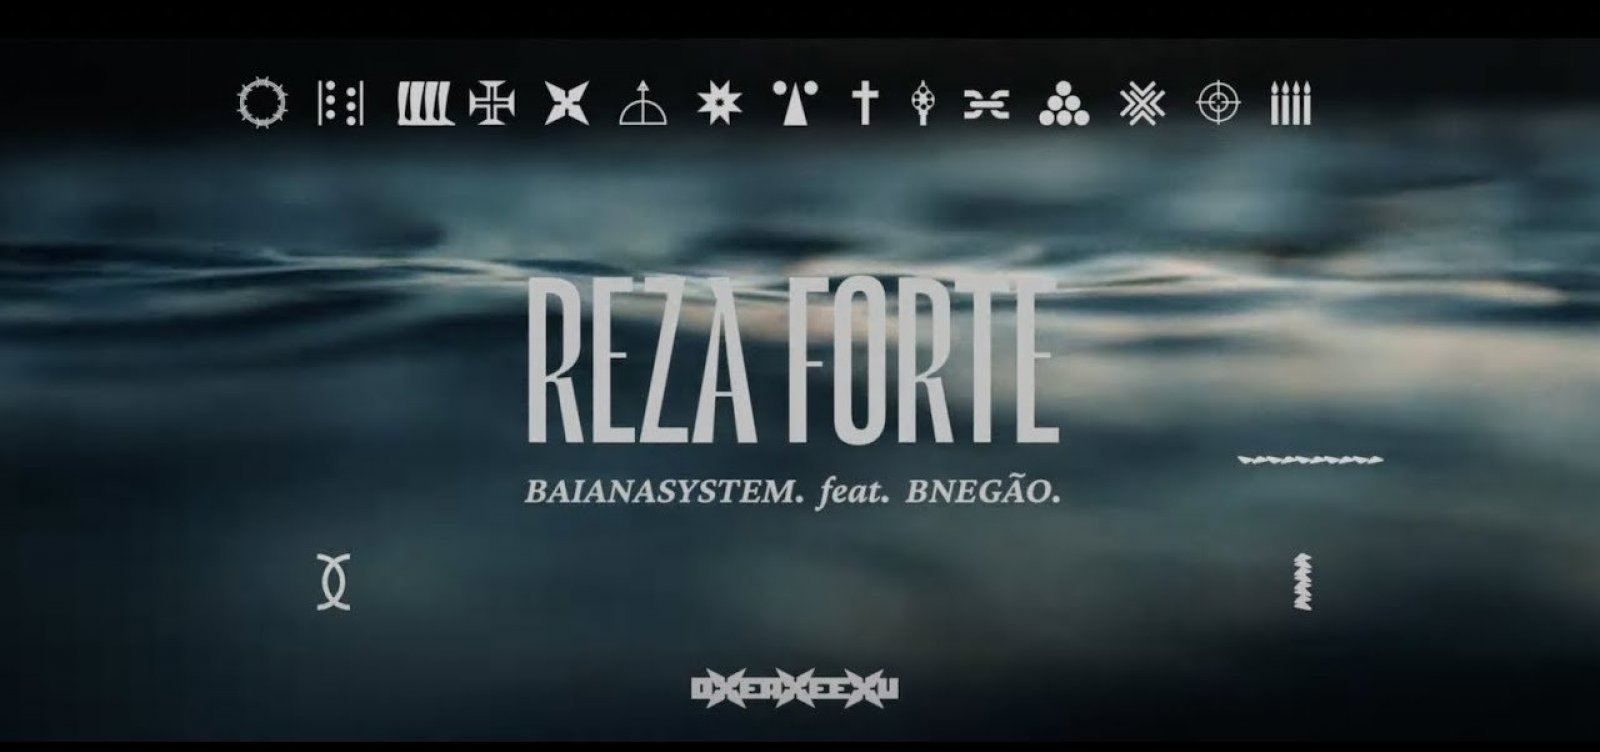 BaianaSystem lança single do próximo álbum: 'Reza Forte', com BNegão